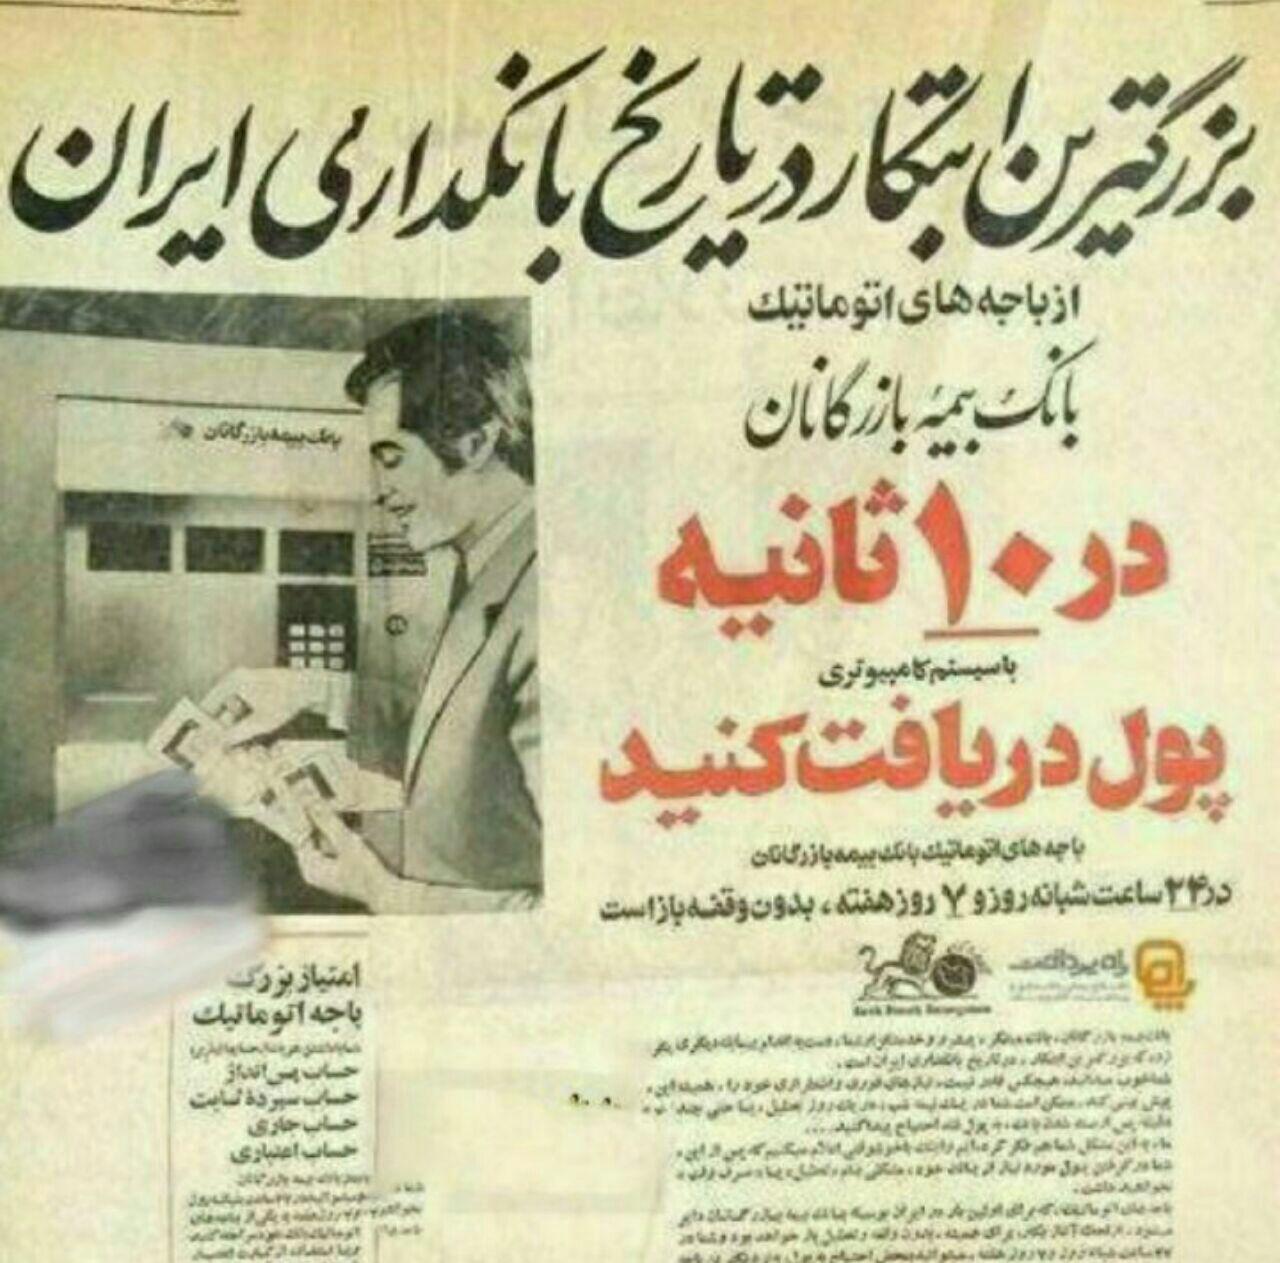  اولین عابر بانک در ایران +تصاویر 